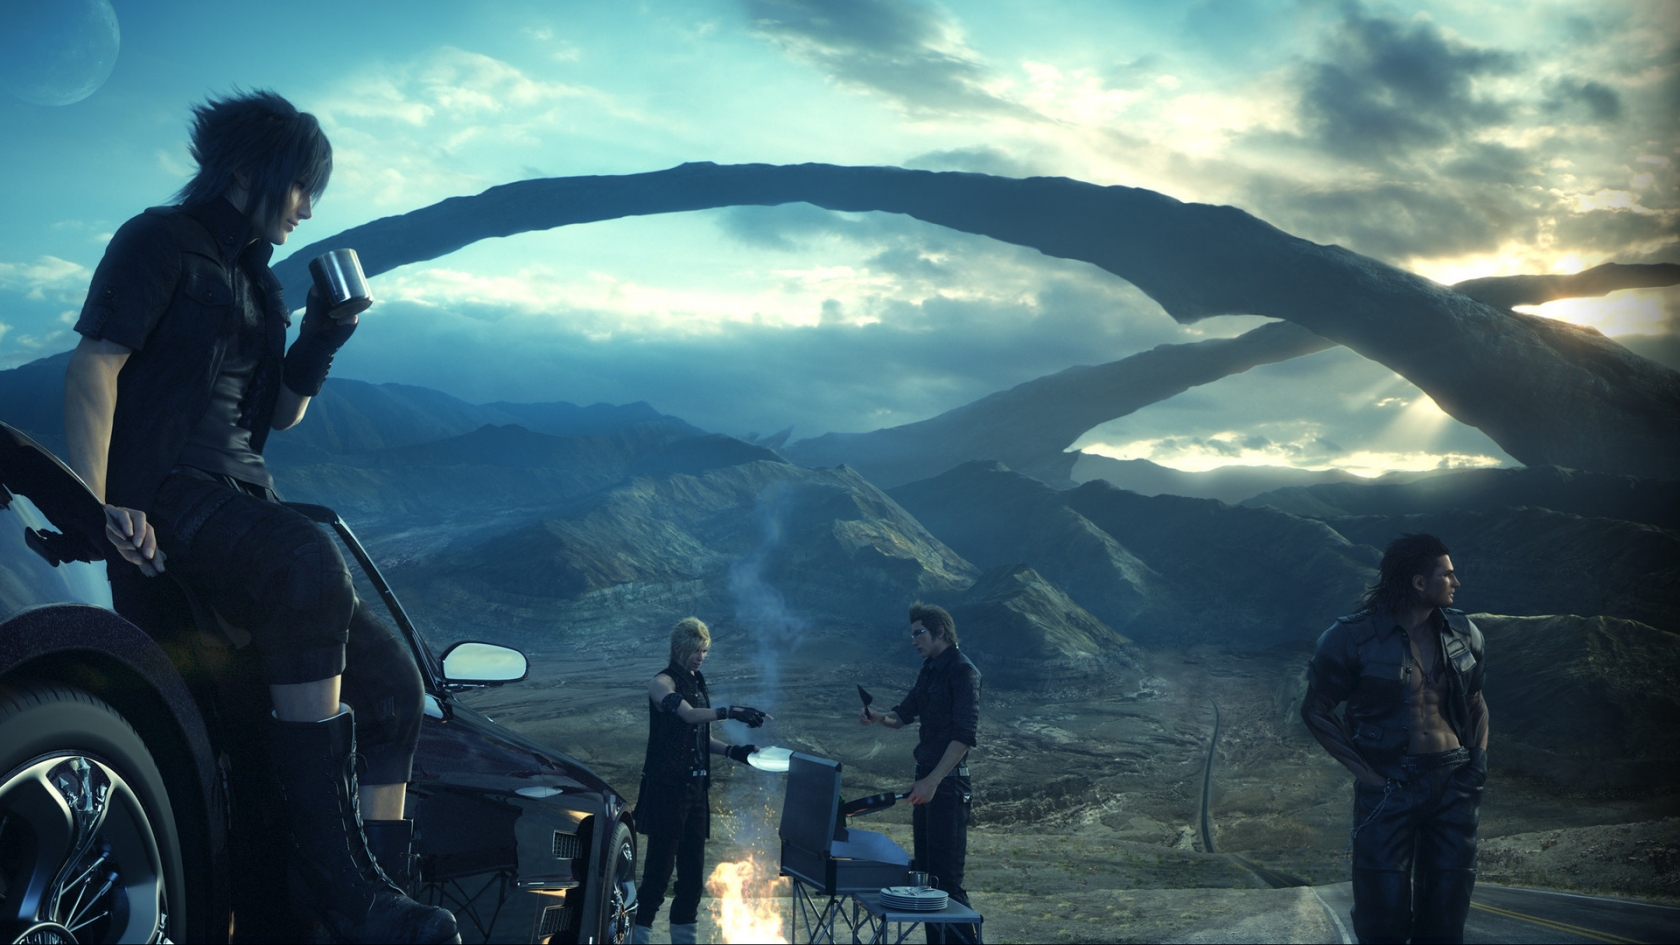 Final Fantasy XV Scene for 1680 x 945 HDTV resolution